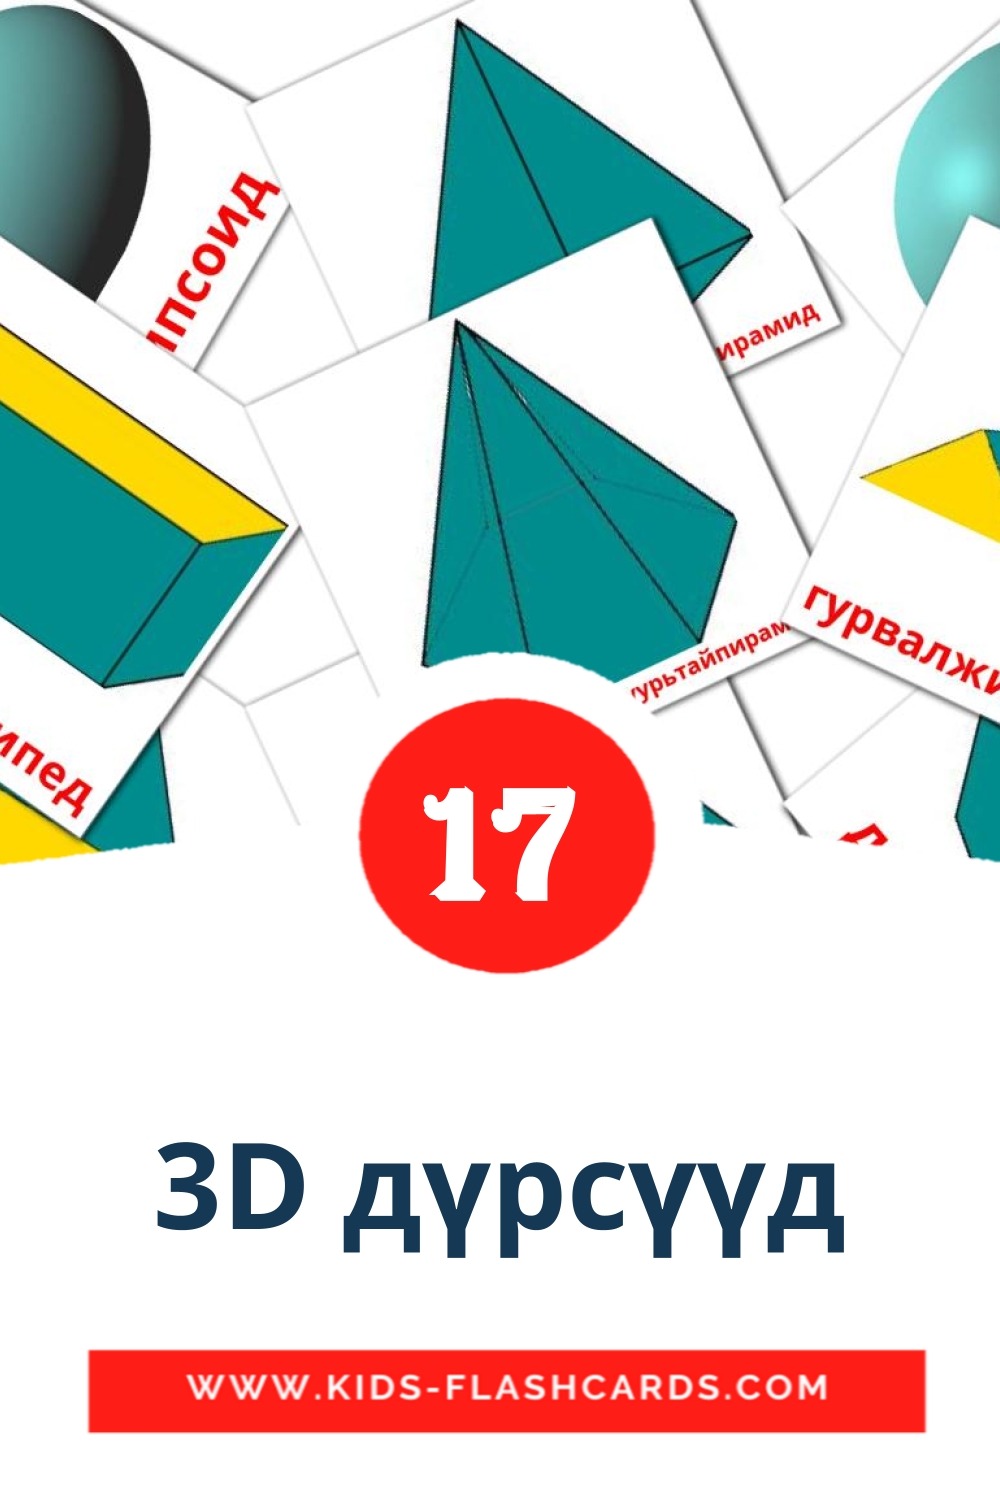 17 carte illustrate di 3D дүрсүүд per la scuola materna in mongolo